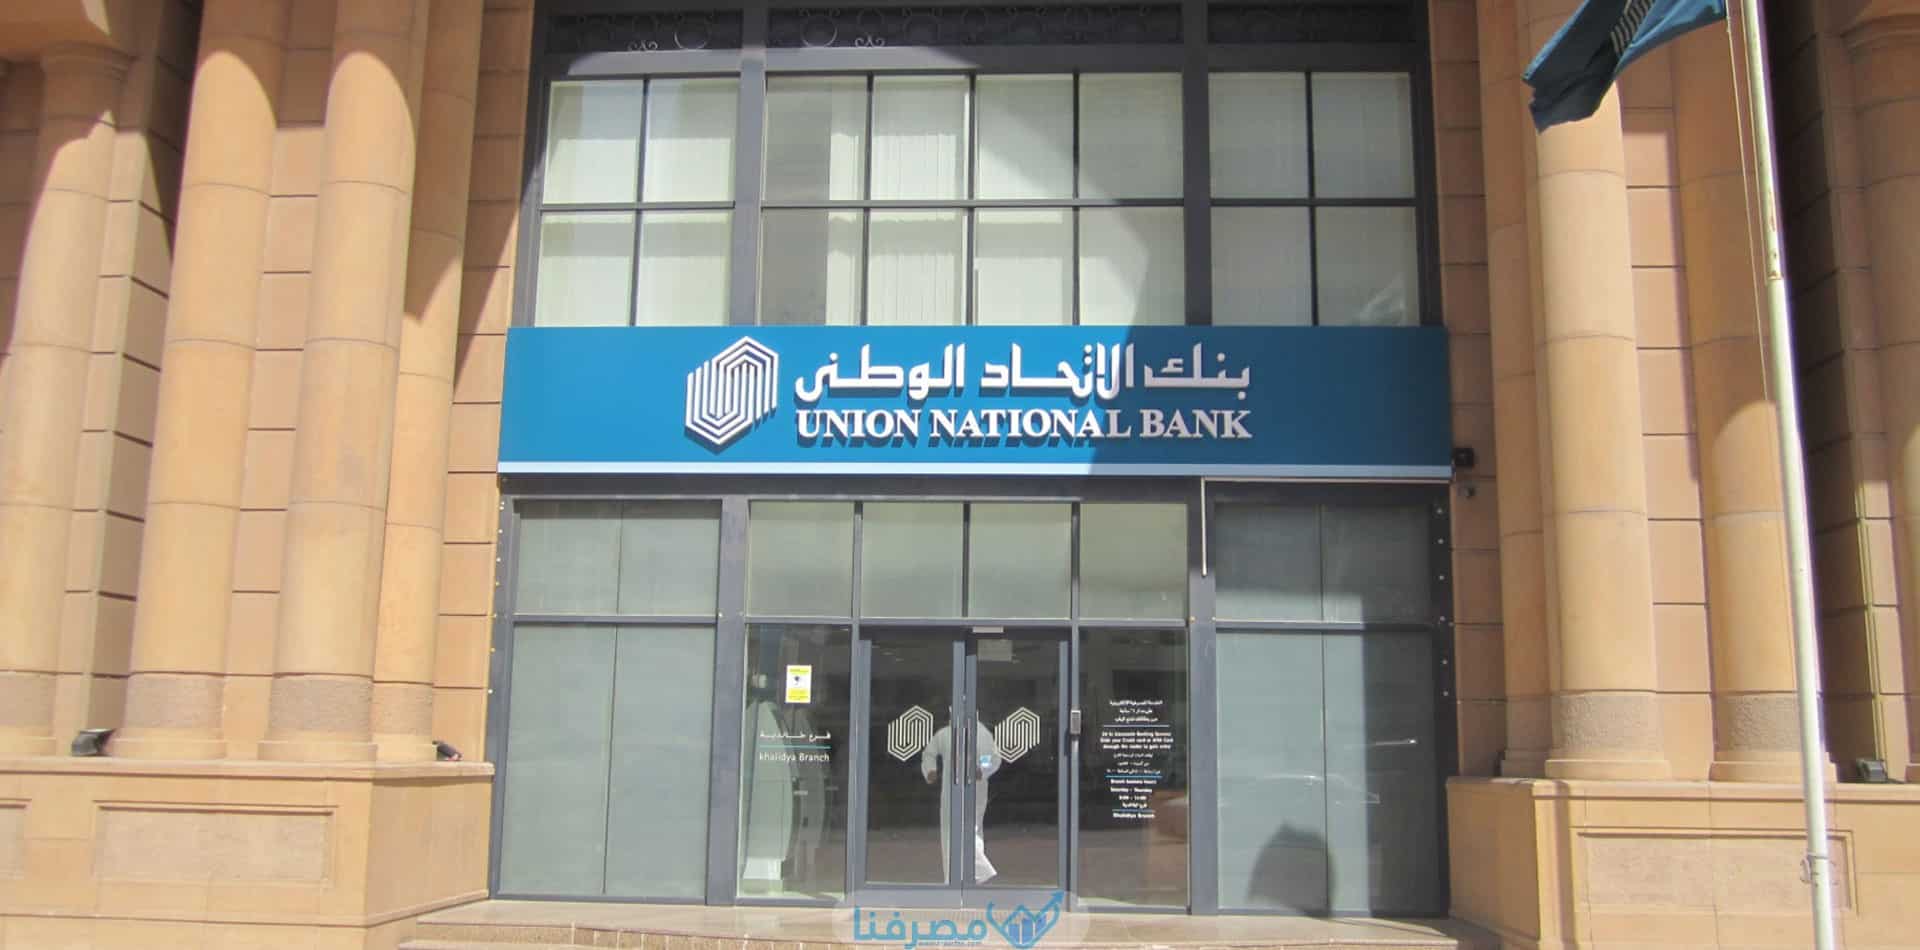 الحسابات البنكية المتاحة في بنك الإتحاد